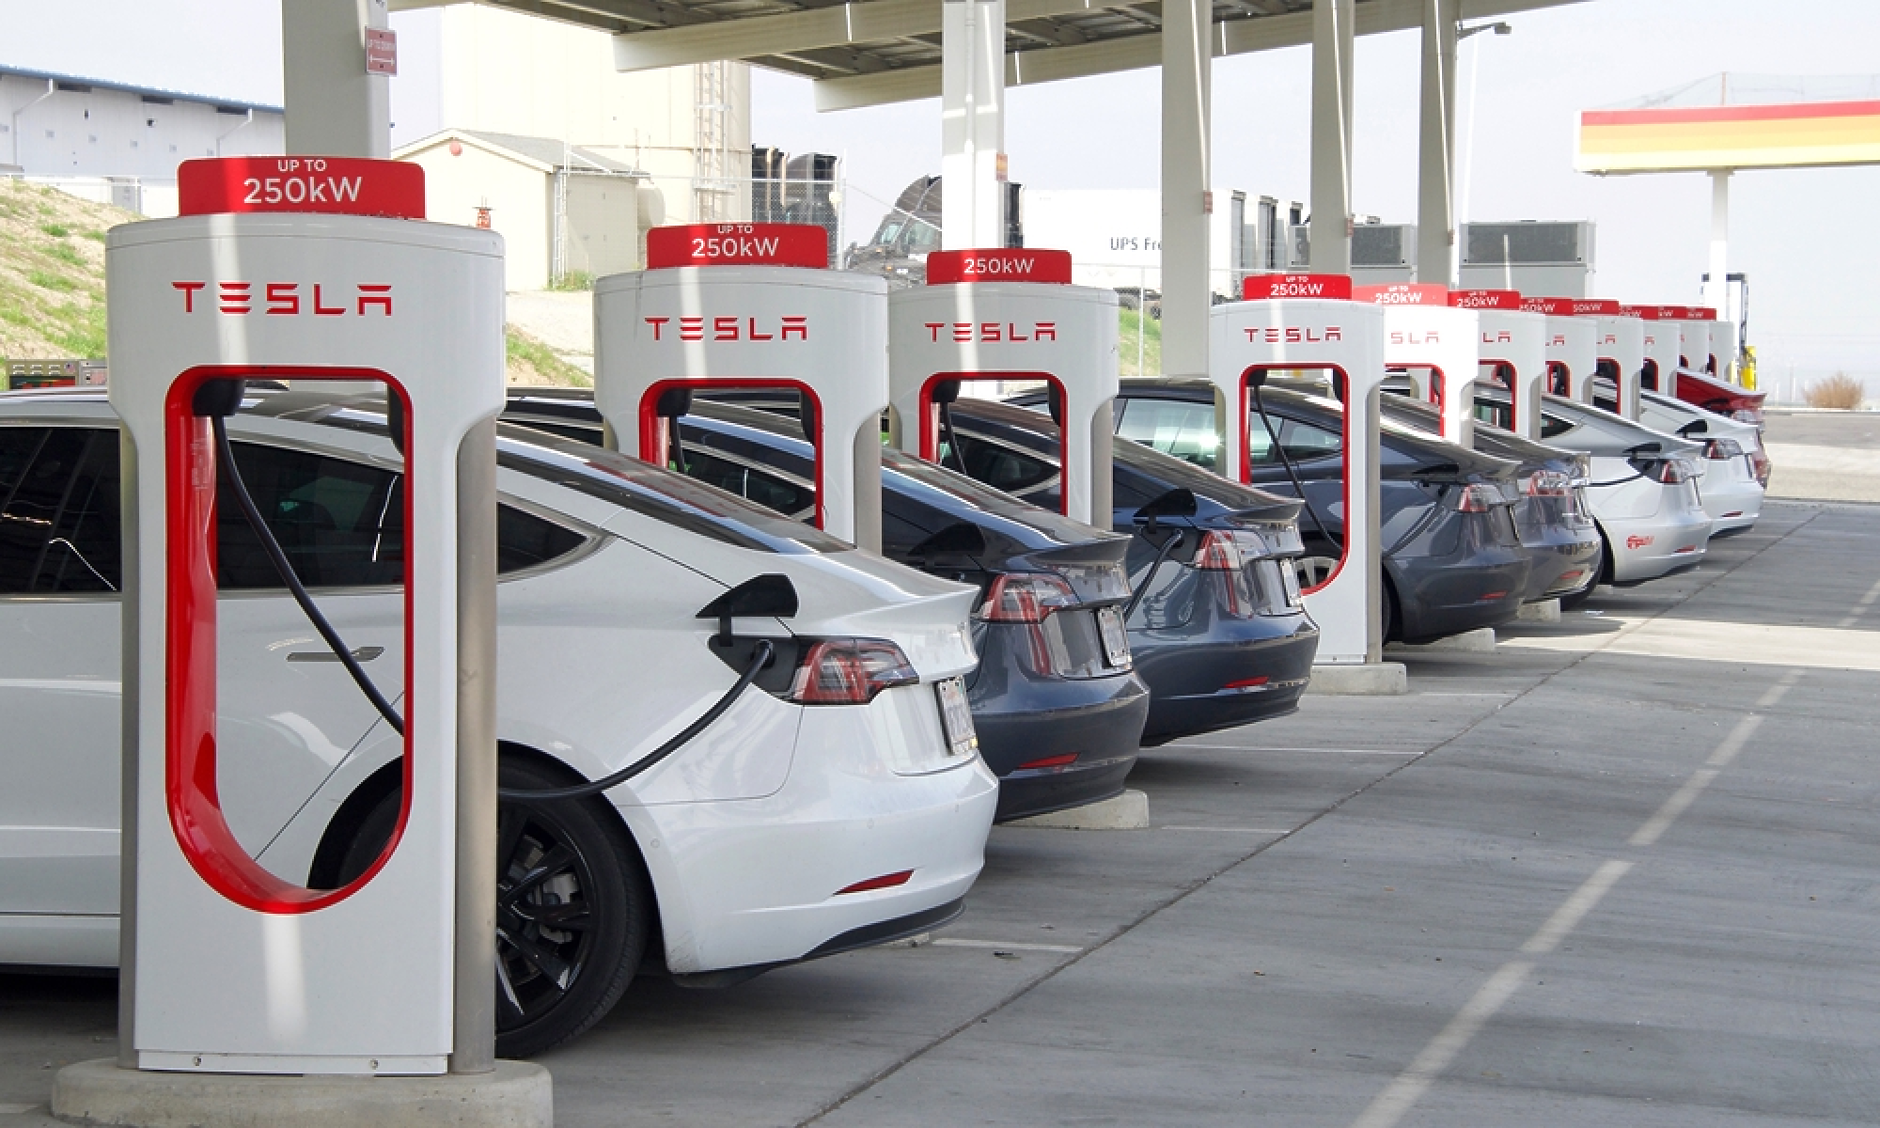 Бритиш mетролиум  прояви интерес за покупка на станции за зареждане на електромобили от Tesla